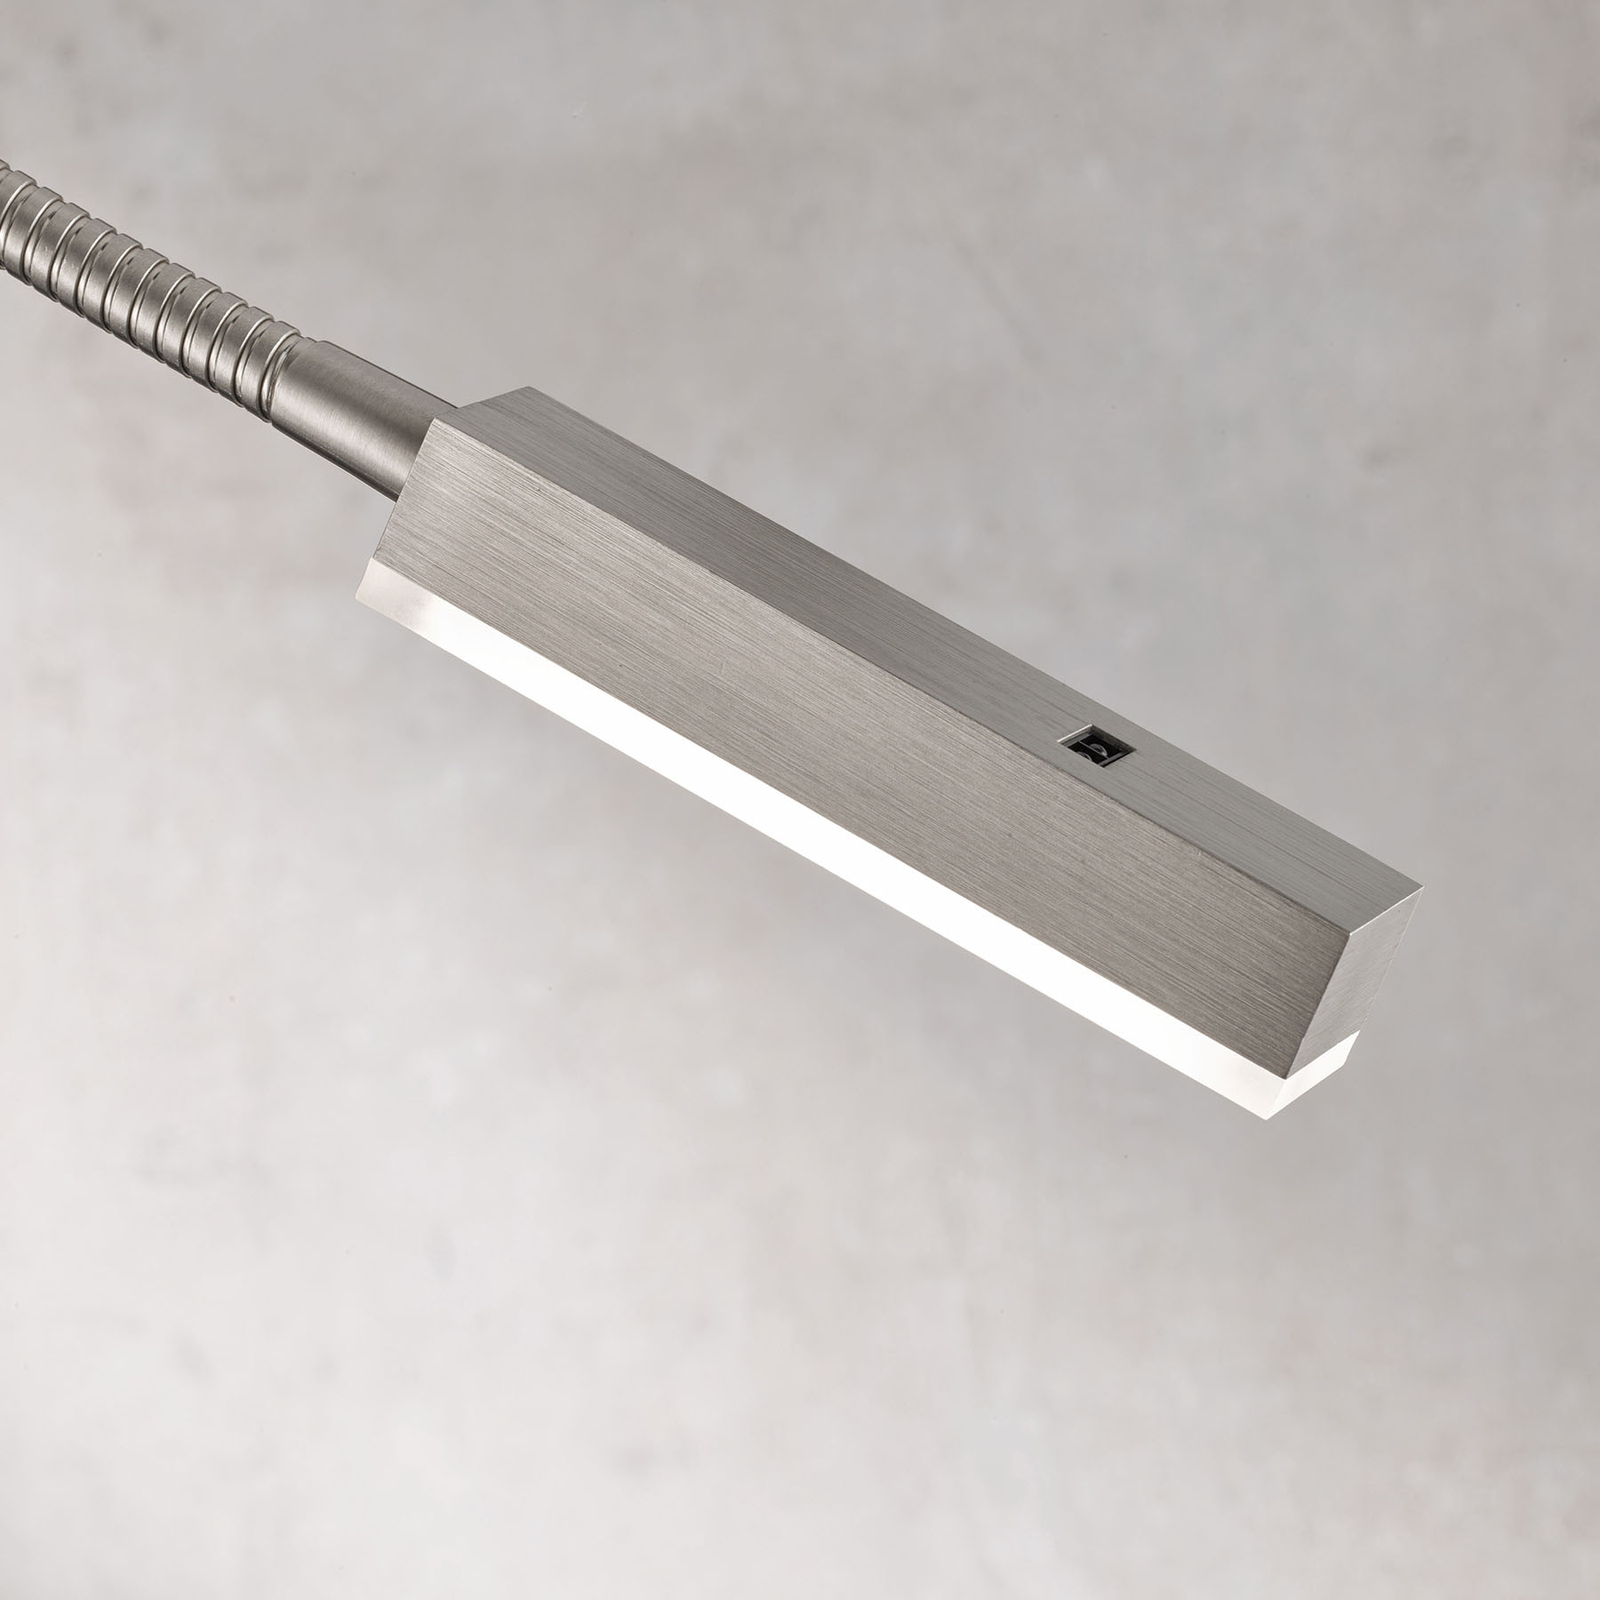 Svietidlo Raik LED s ovládaním gestami, 60 cm